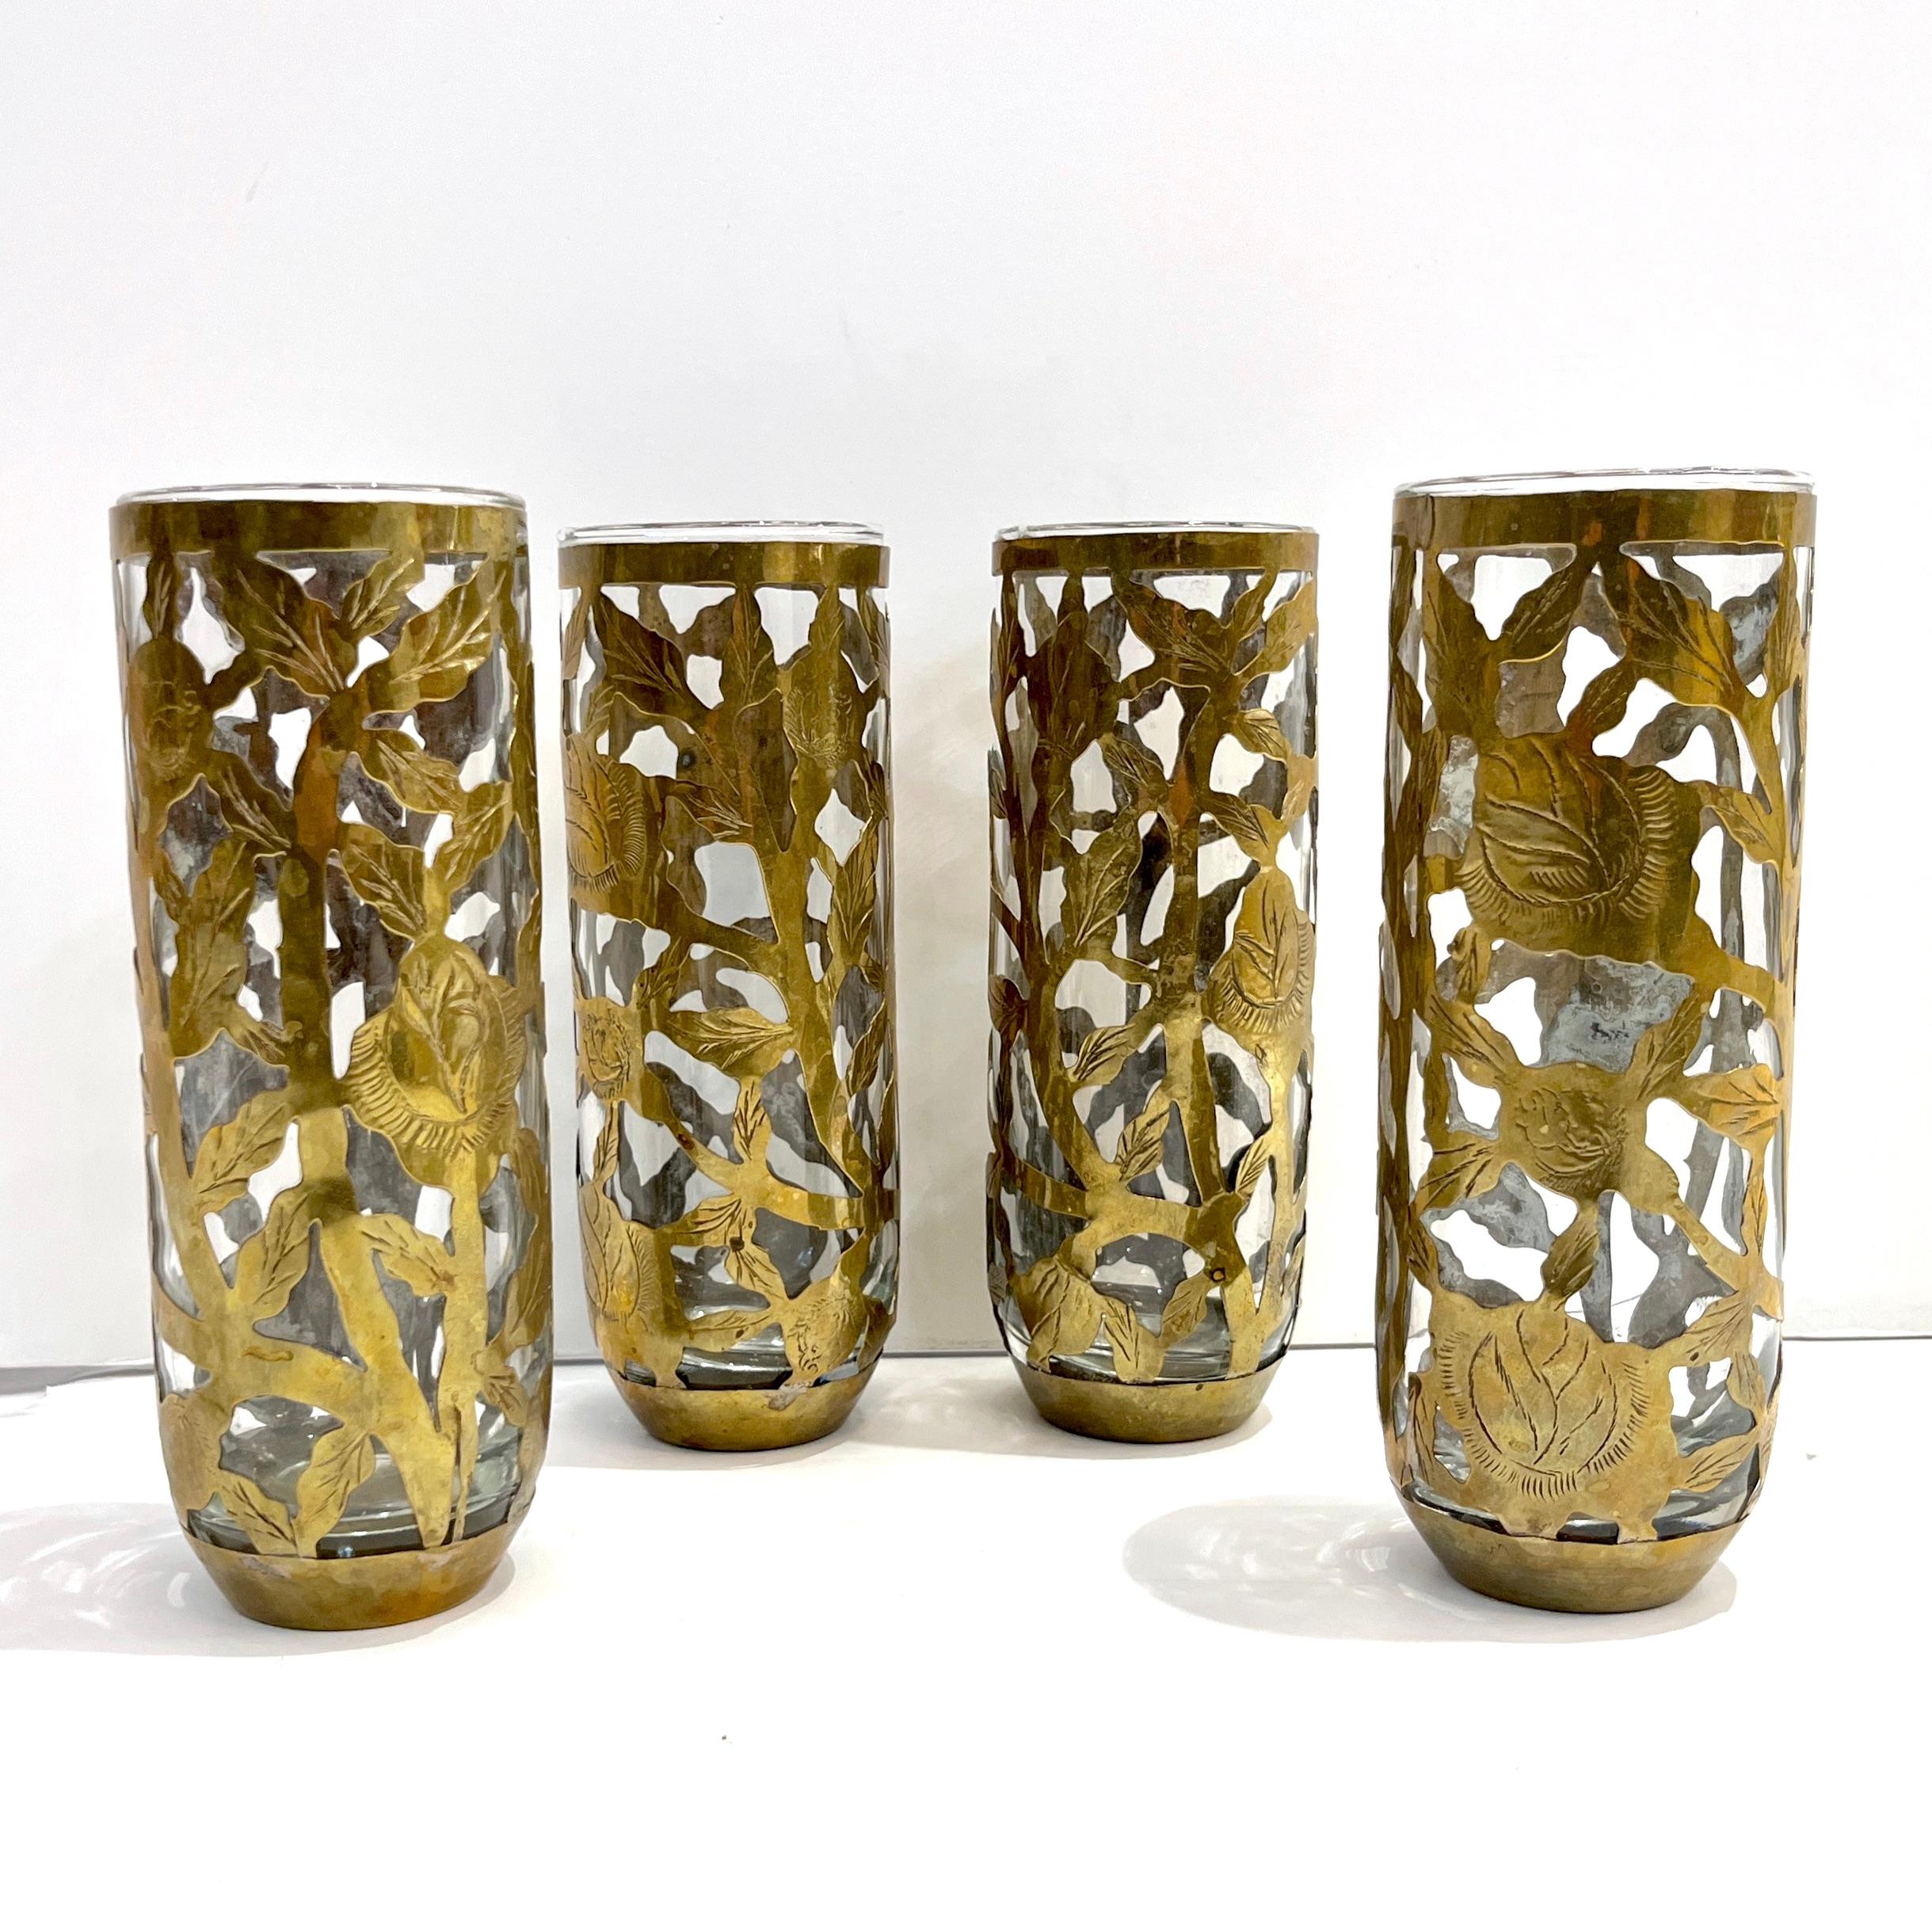 1960er Jahre, Mitte des 20. Jahrhunderts, 4 organische Gläser, vollständig in Mexiko handgefertigt, in einer handgefertigten offenen Hülle aus antikem Messing, verziert mit einem geätzten Blumen- und Laubdekor.
Ideal als Bargeschirr, aber auch als